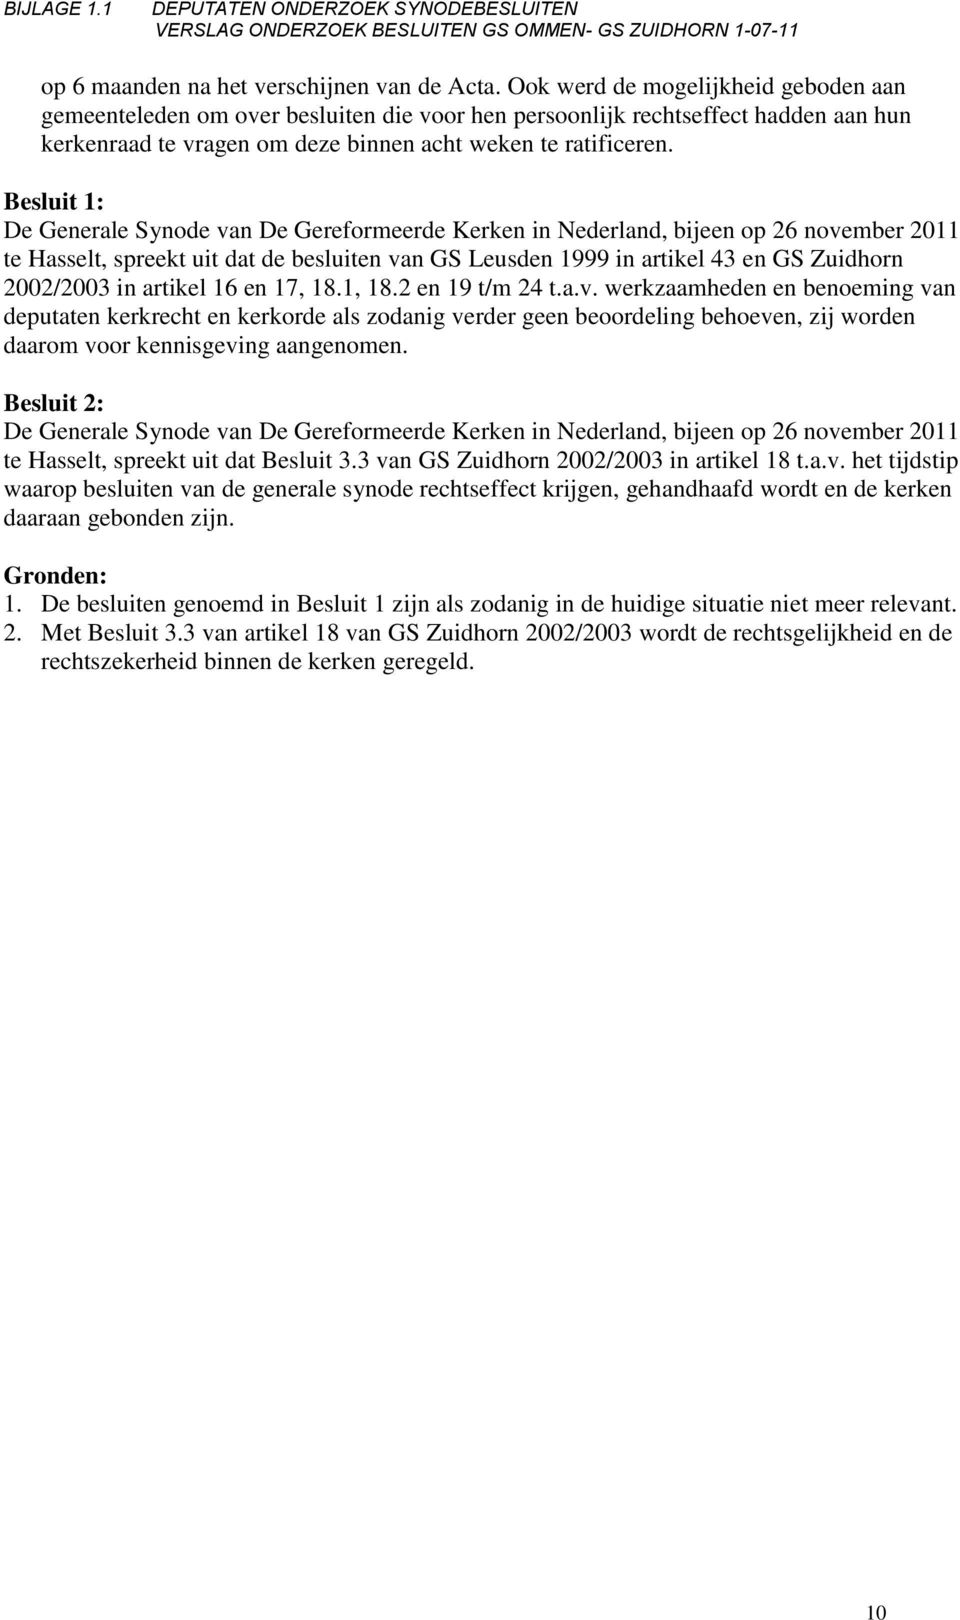 Besluit 1: De Generale Synode van De Gereformeerde Kerken in Nederland, bijeen op 26 november 2011 te Hasselt, spreekt uit dat de besluiten van GS Leusden 1999 in artikel 43 en GS Zuidhorn 2002/2003